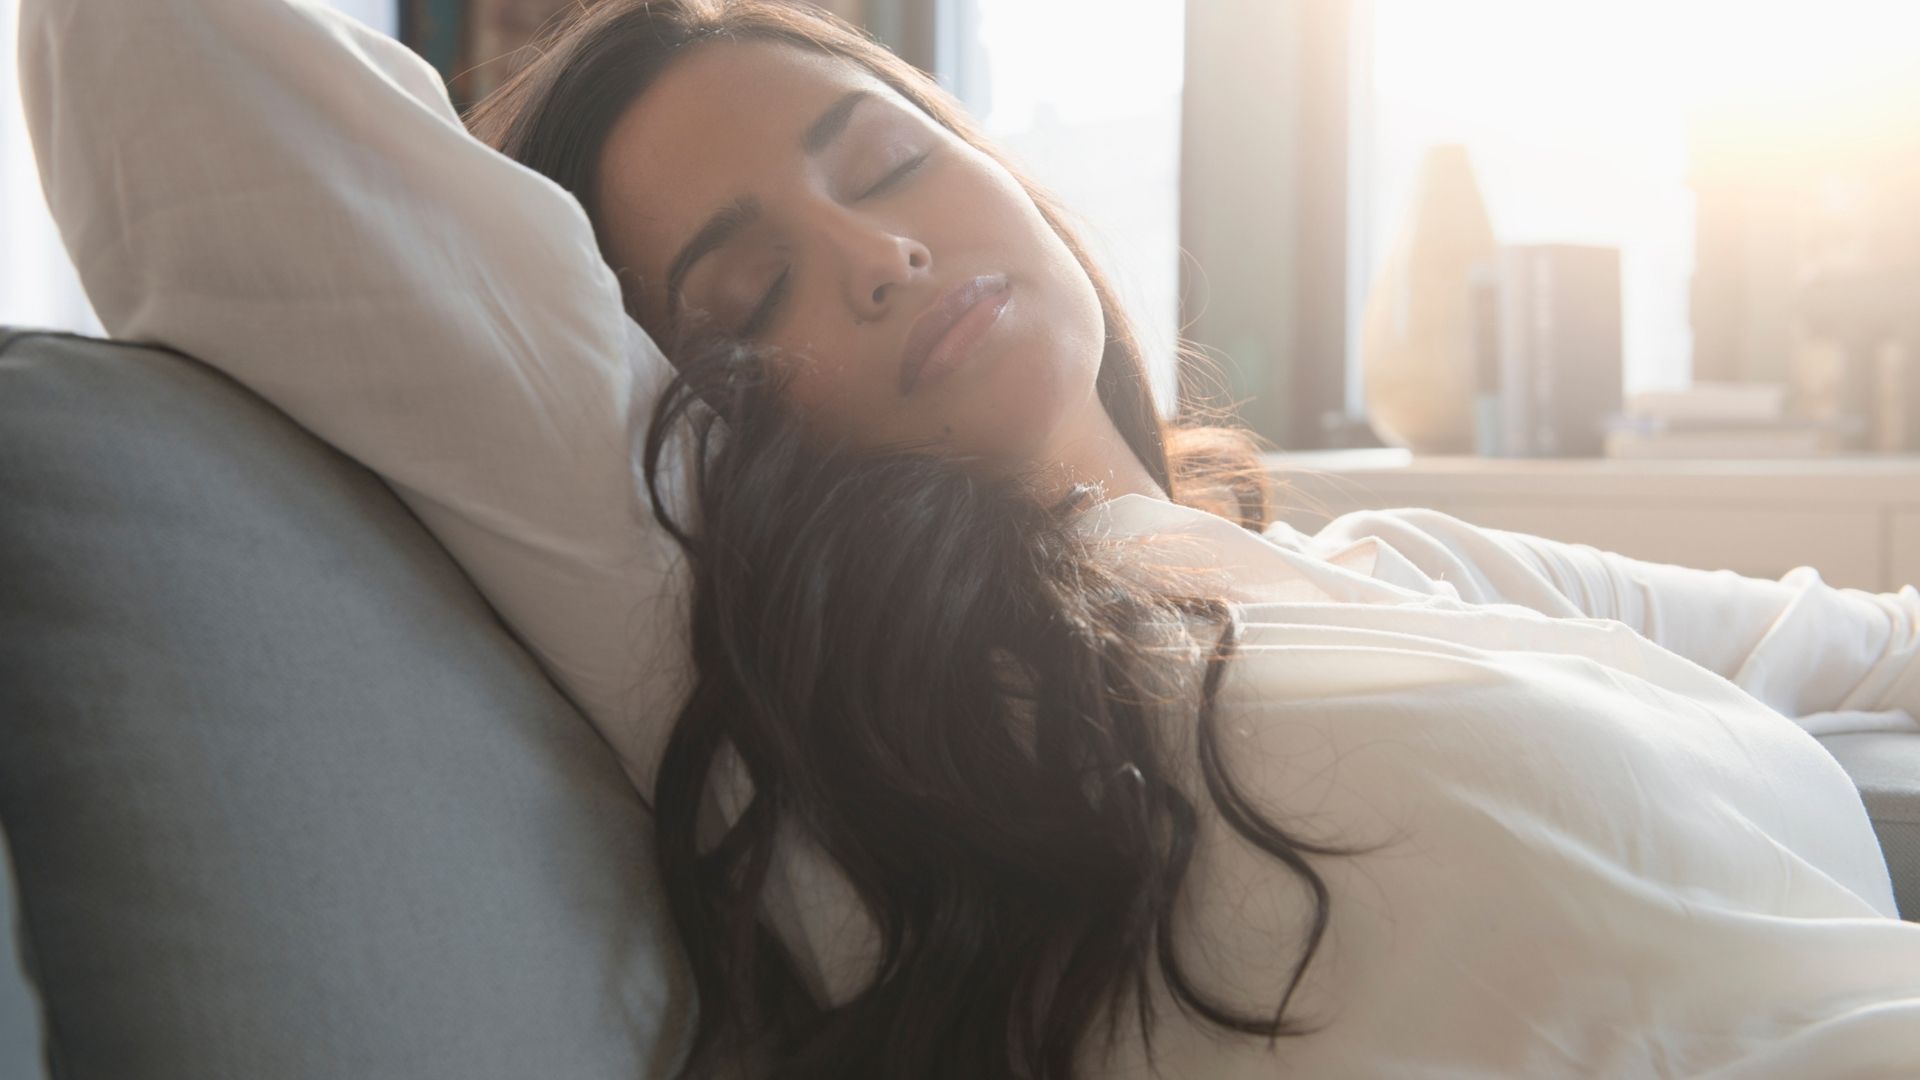 Una siesta poderosa debe durar entre 20 y 25 minutos, así se evita entrar en sueño profundo y sentirse desorientado al despertar (Getty)